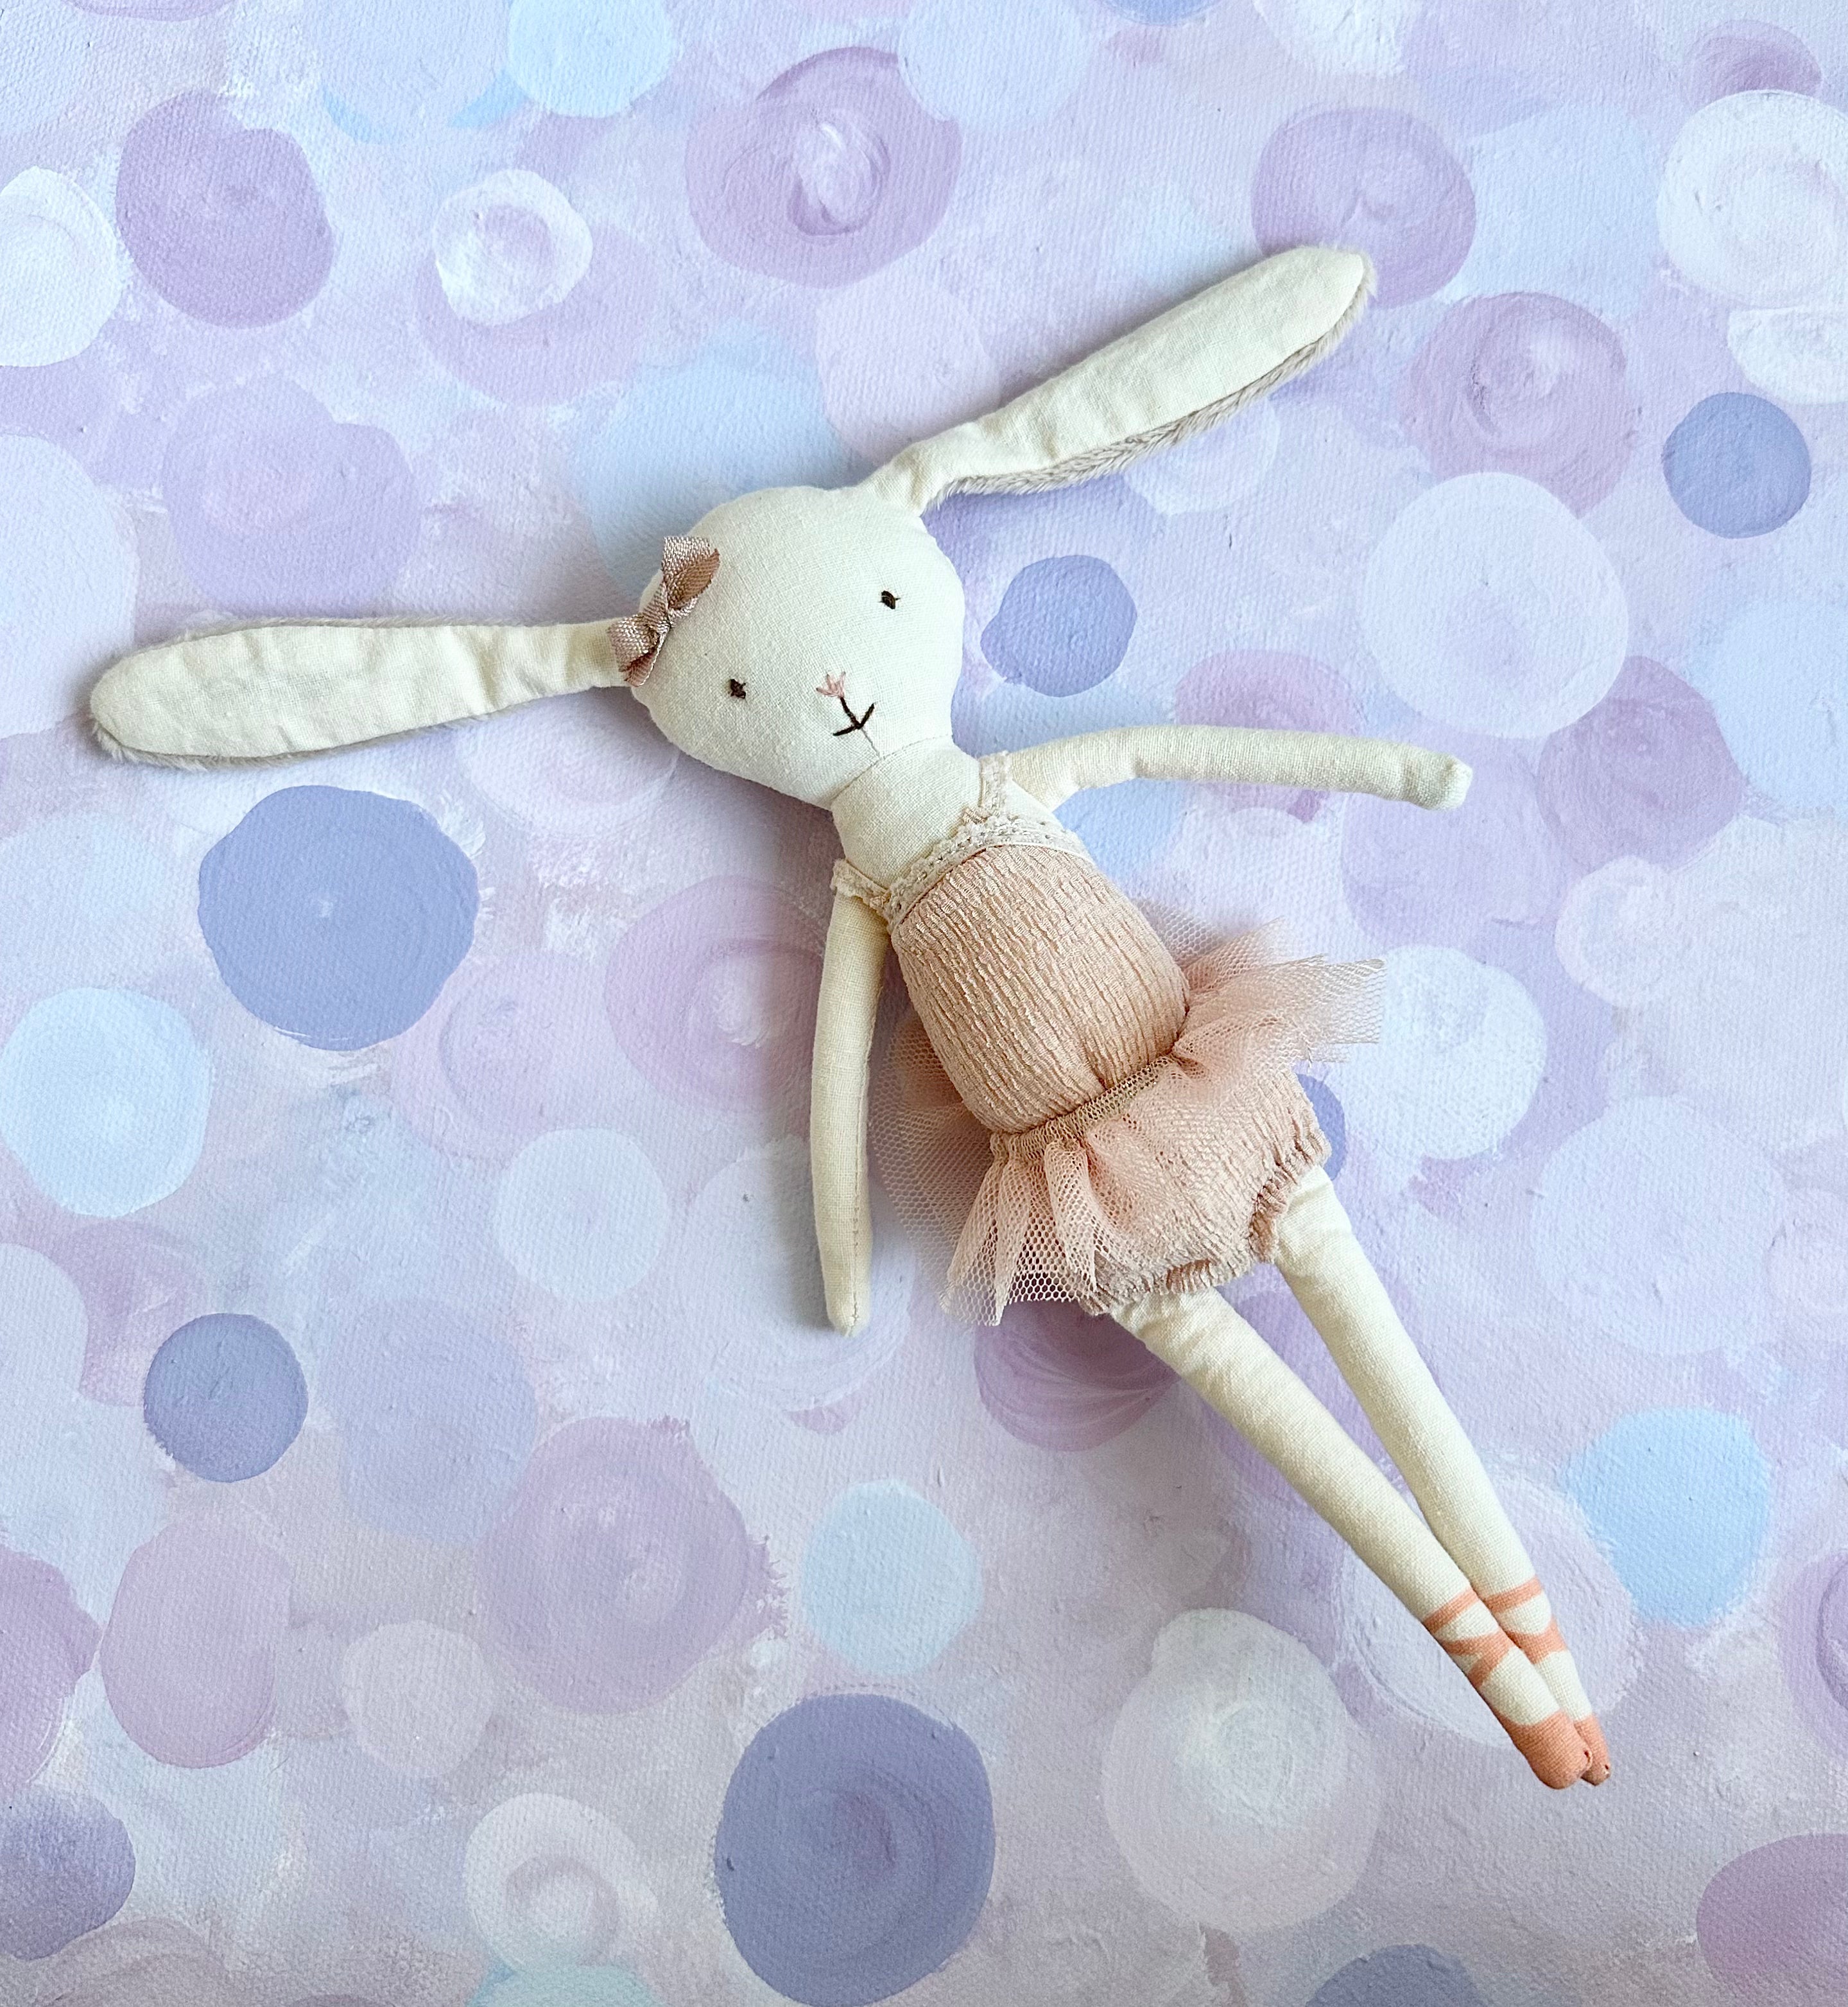 Ballerina Bunny in Tube - 2018